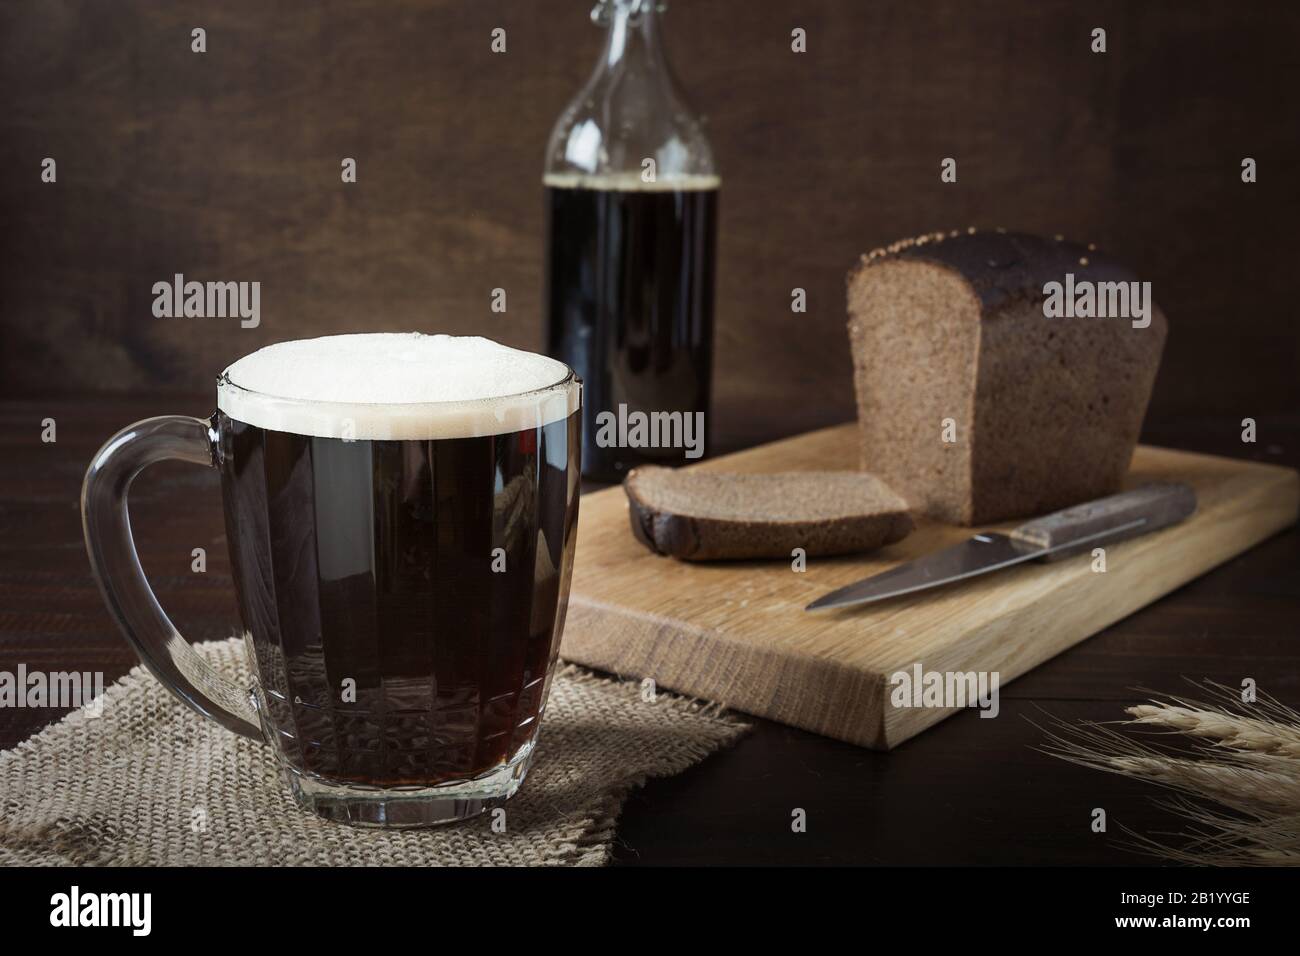 Bebida rusa fermentada kvass de pan de centeno en taza especial de medio litro sobre fondo oscuro. Primer plano. Foto de stock